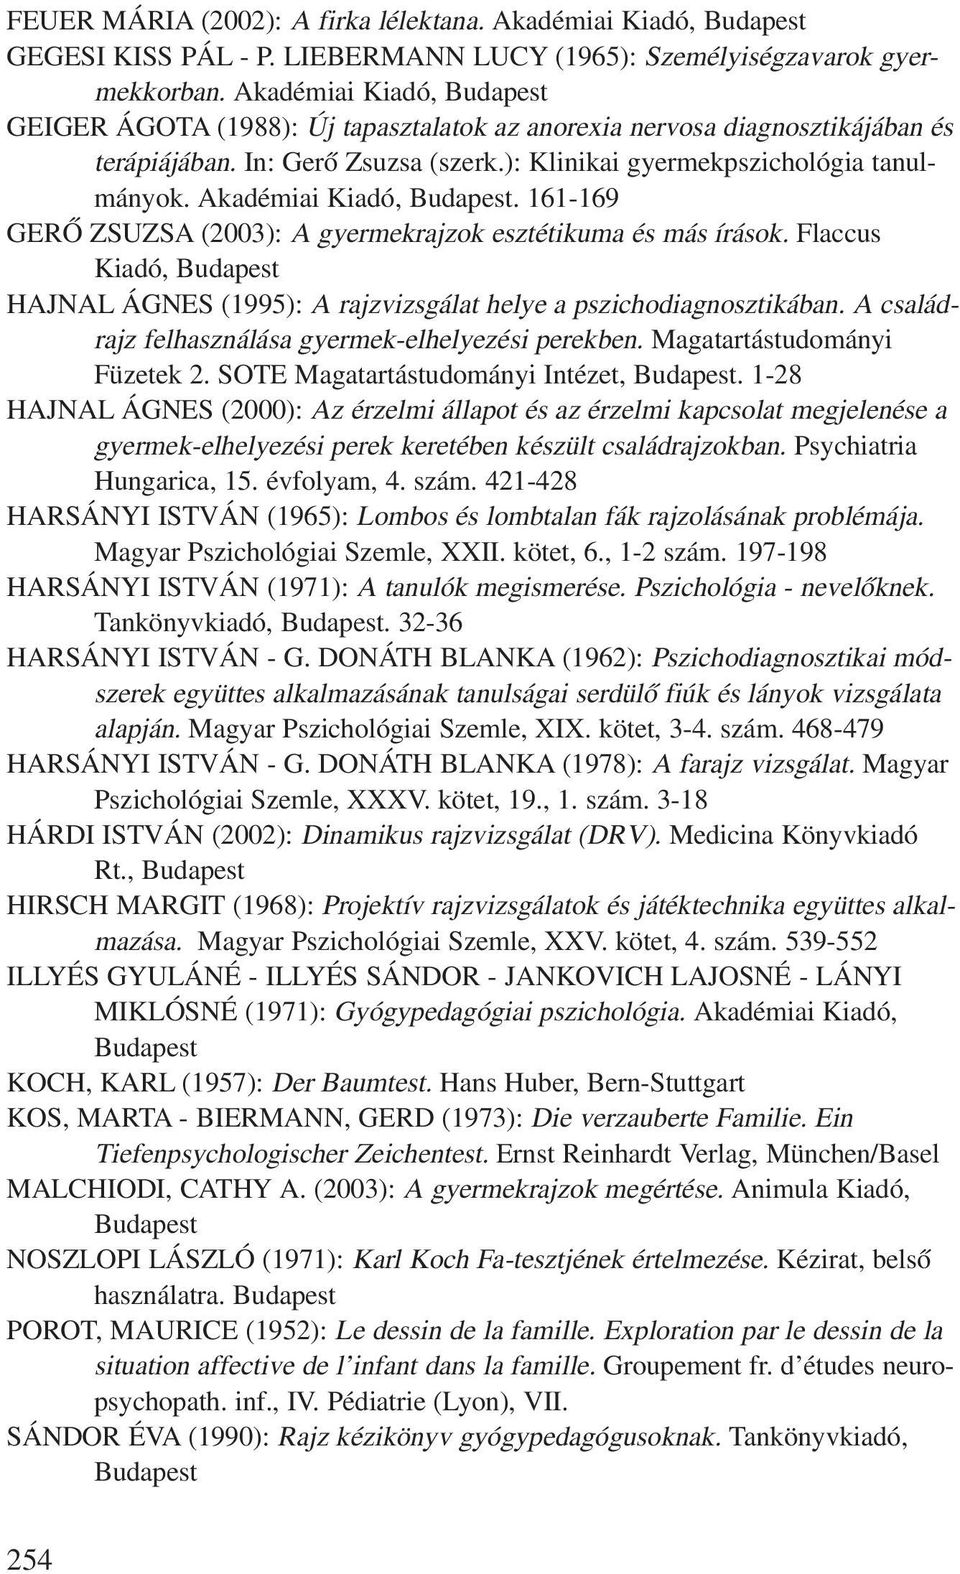 akadémiai Kiadó, Budapest. 161-169 GeRÕ zsuzsa (2003): a gyermekrajzok esztétikuma és más írások. Flaccus Kiadó, Budapest HaJNal ÁGNeS (1995): a rajzvizsgálat helye a pszichodiagnosztikában.